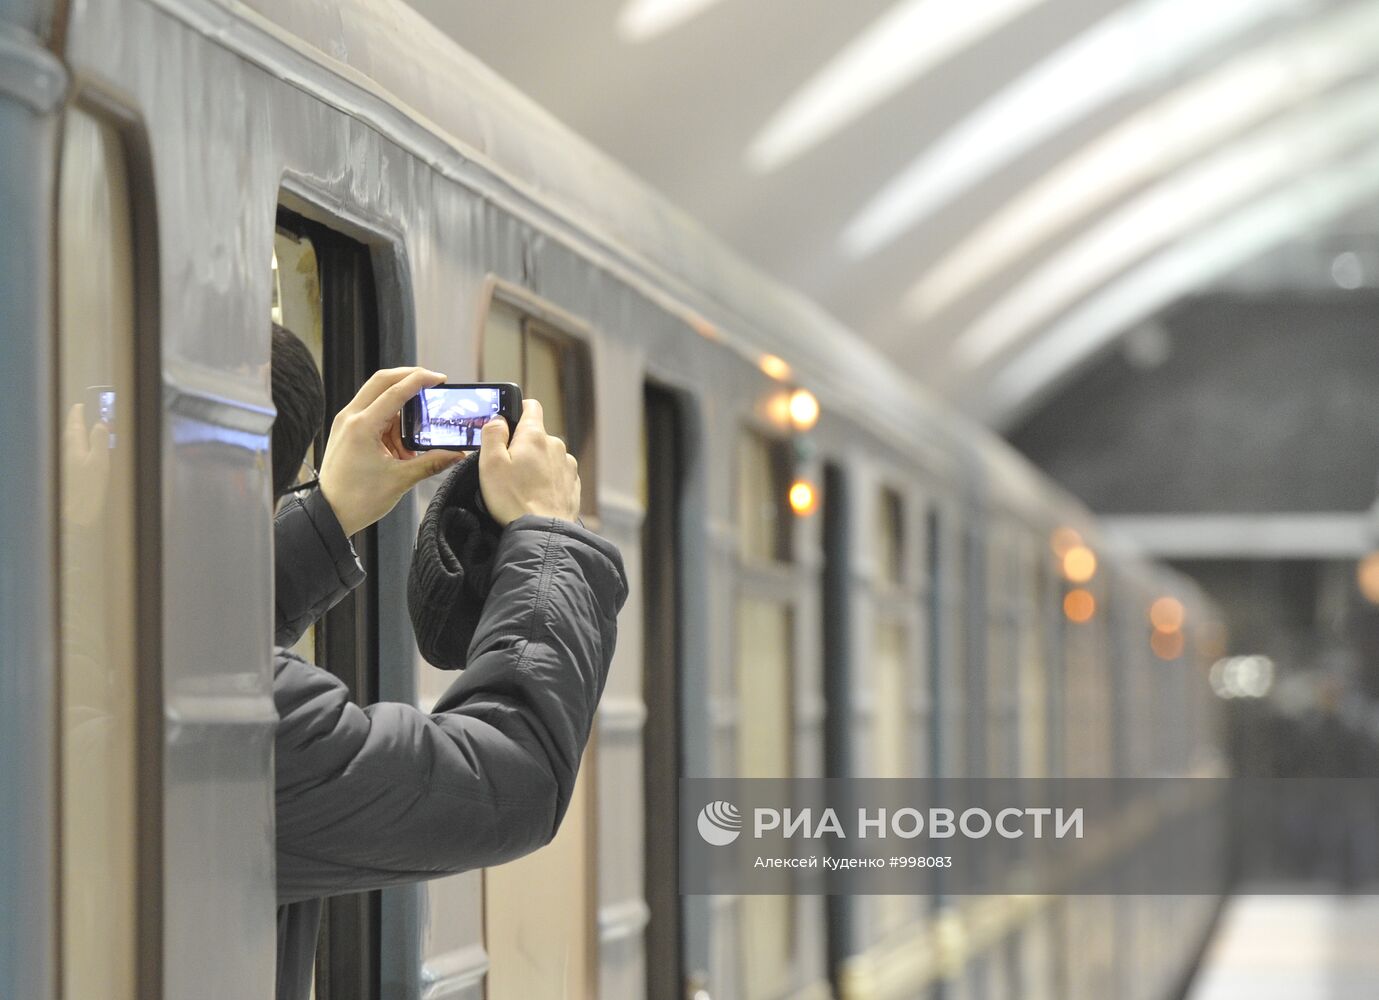 Открытие станций метро "Борисово", "Шипиловская", "Зябликово"